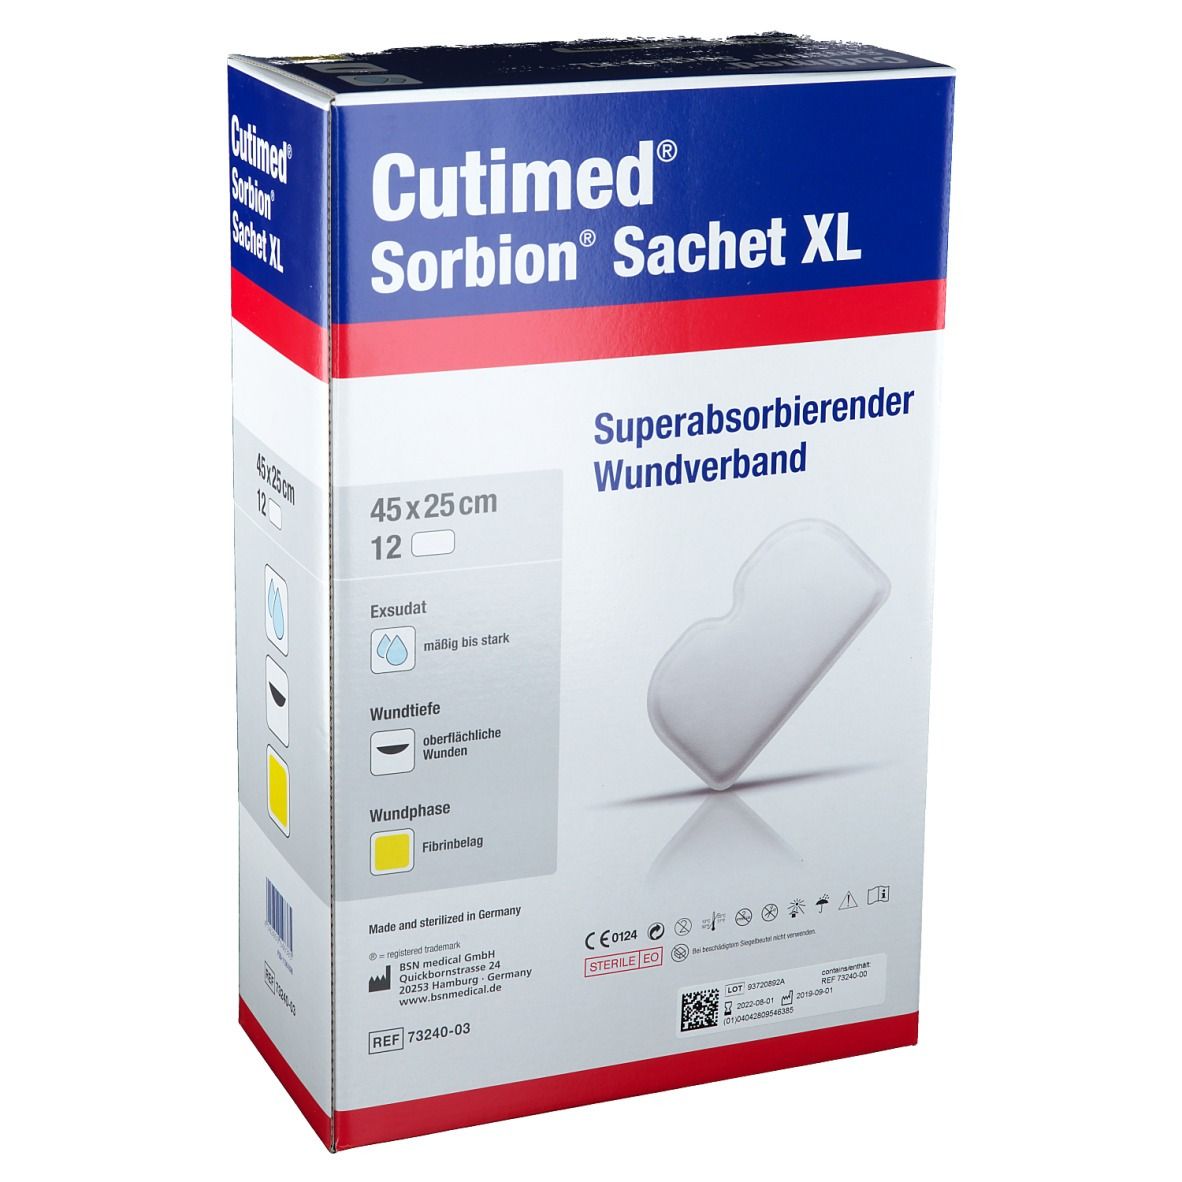 Image of Cutimed® Sorbion Sachet XL 45 cm x 25 cm